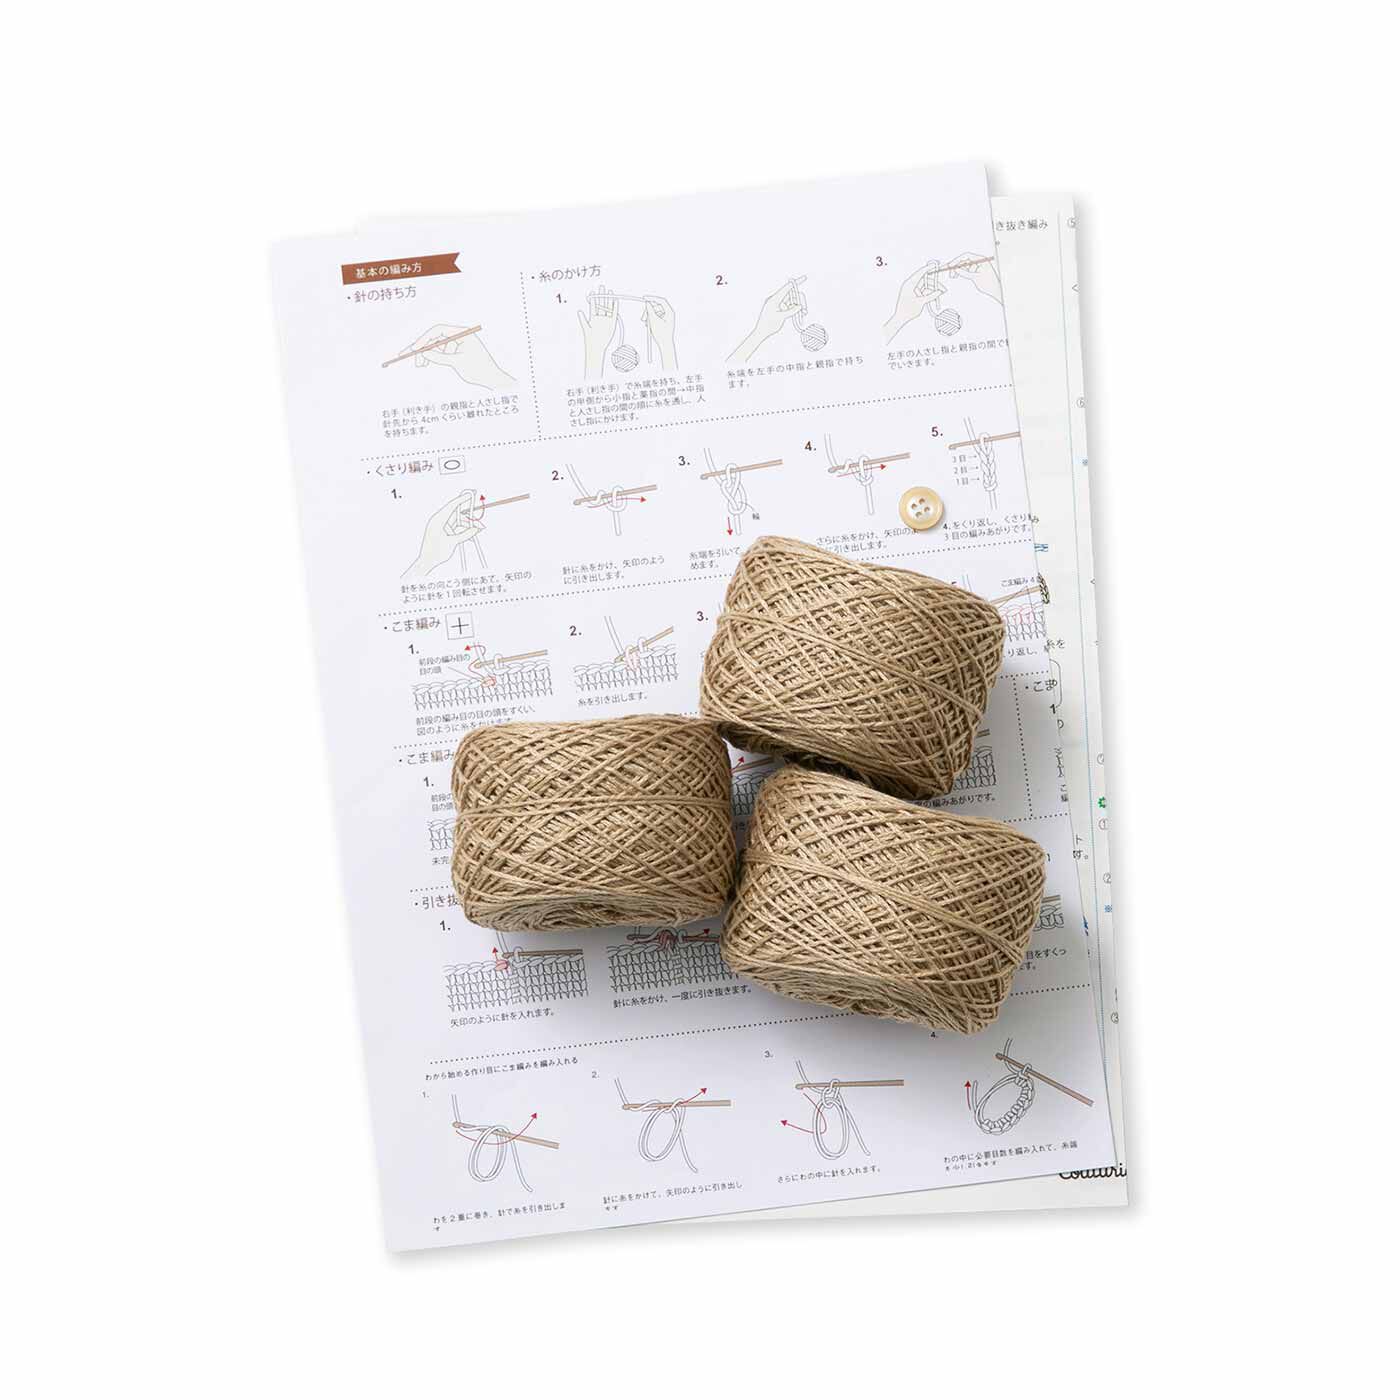 クチュリエ|リサイクルポリエステルの糸で編む 日常使いのかぎ針マルシェバッグの会|●1回分のお届けキット例です。